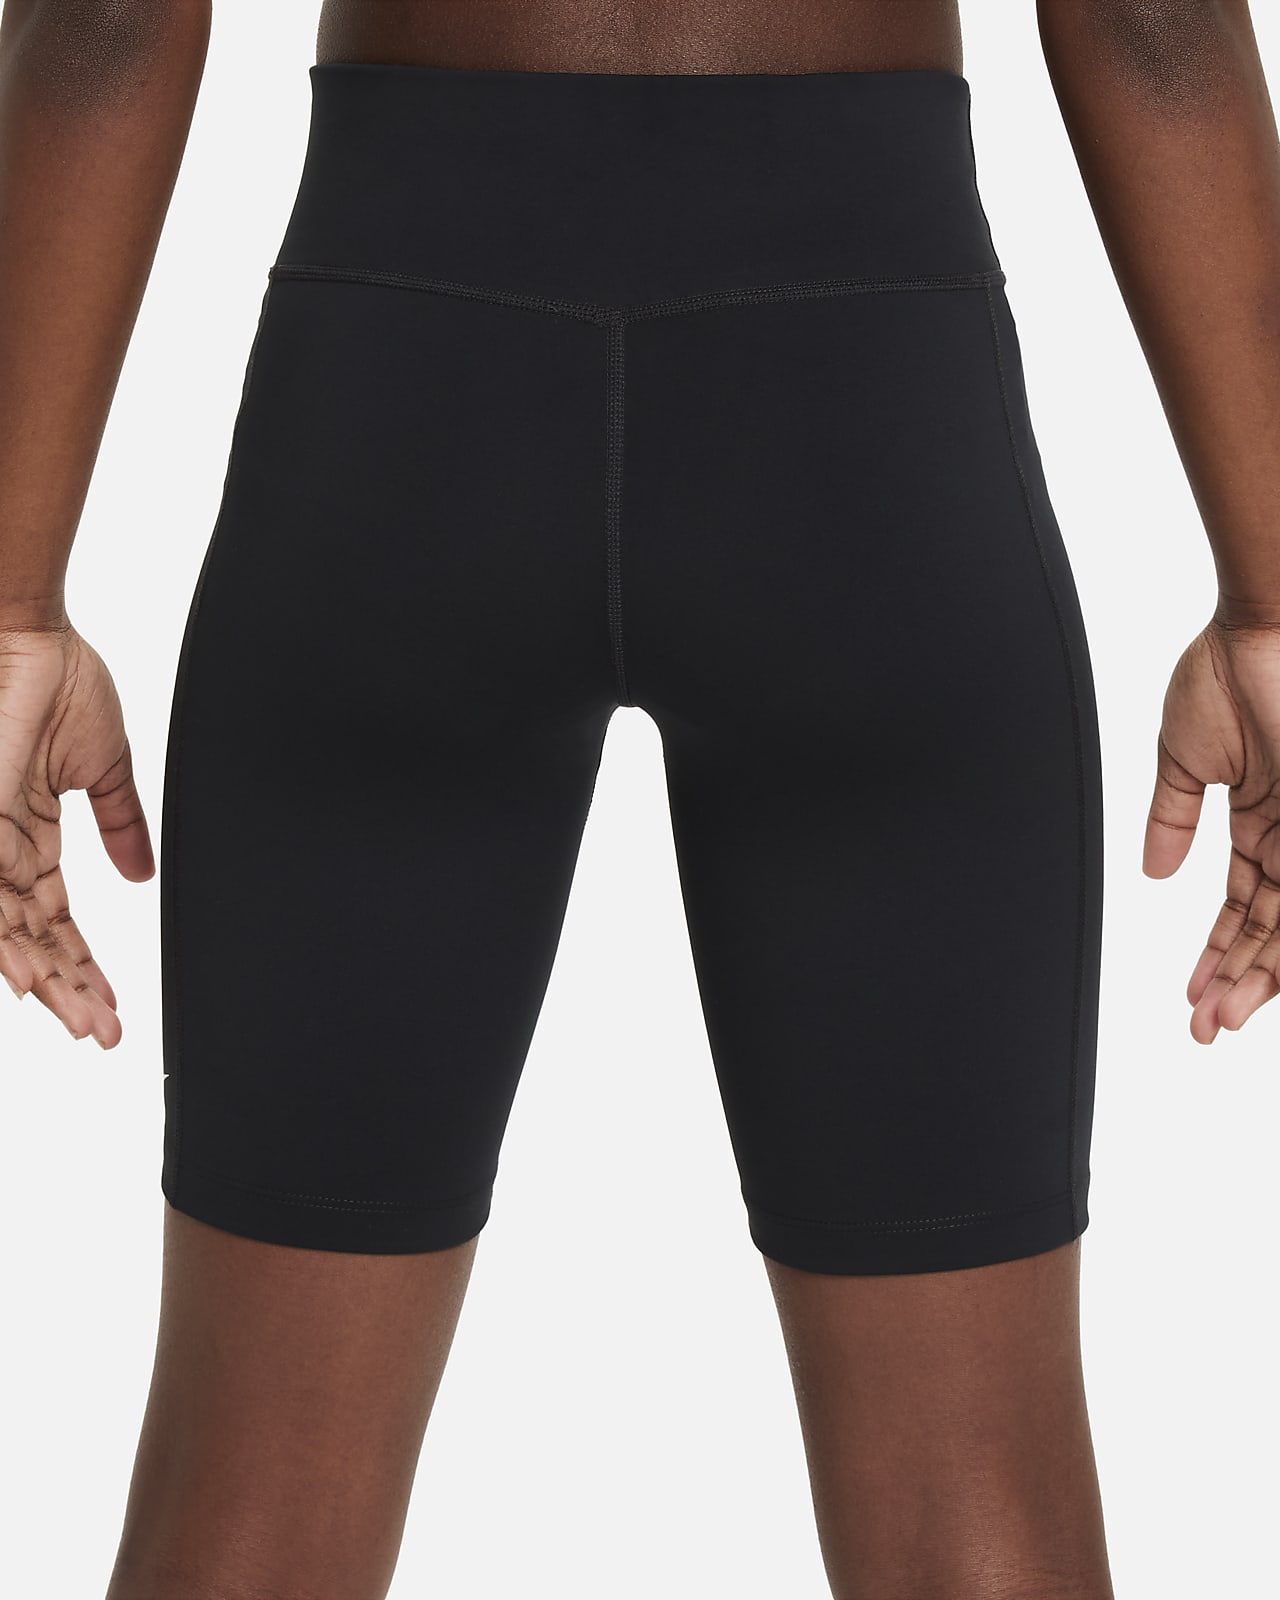 Nike One Leak Protection: Period Big Kids' (Girls') High-Waisted 7 Biker  Shorts.